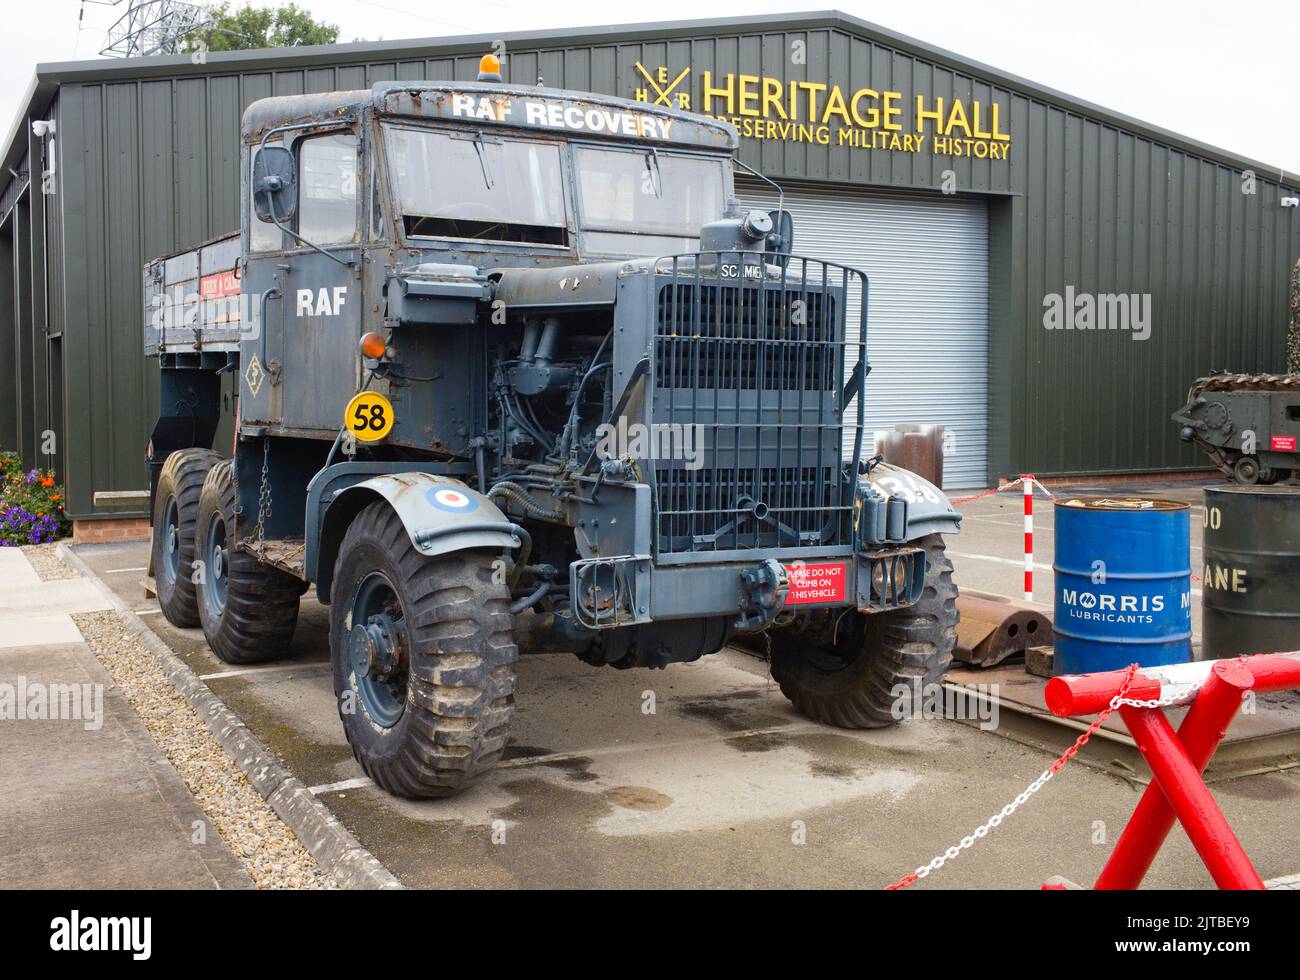 Camión de recuperación de la RAF de Scammel en el museo de tiempo de guerra Eden Camp, Malton, Yorkshire Foto de stock